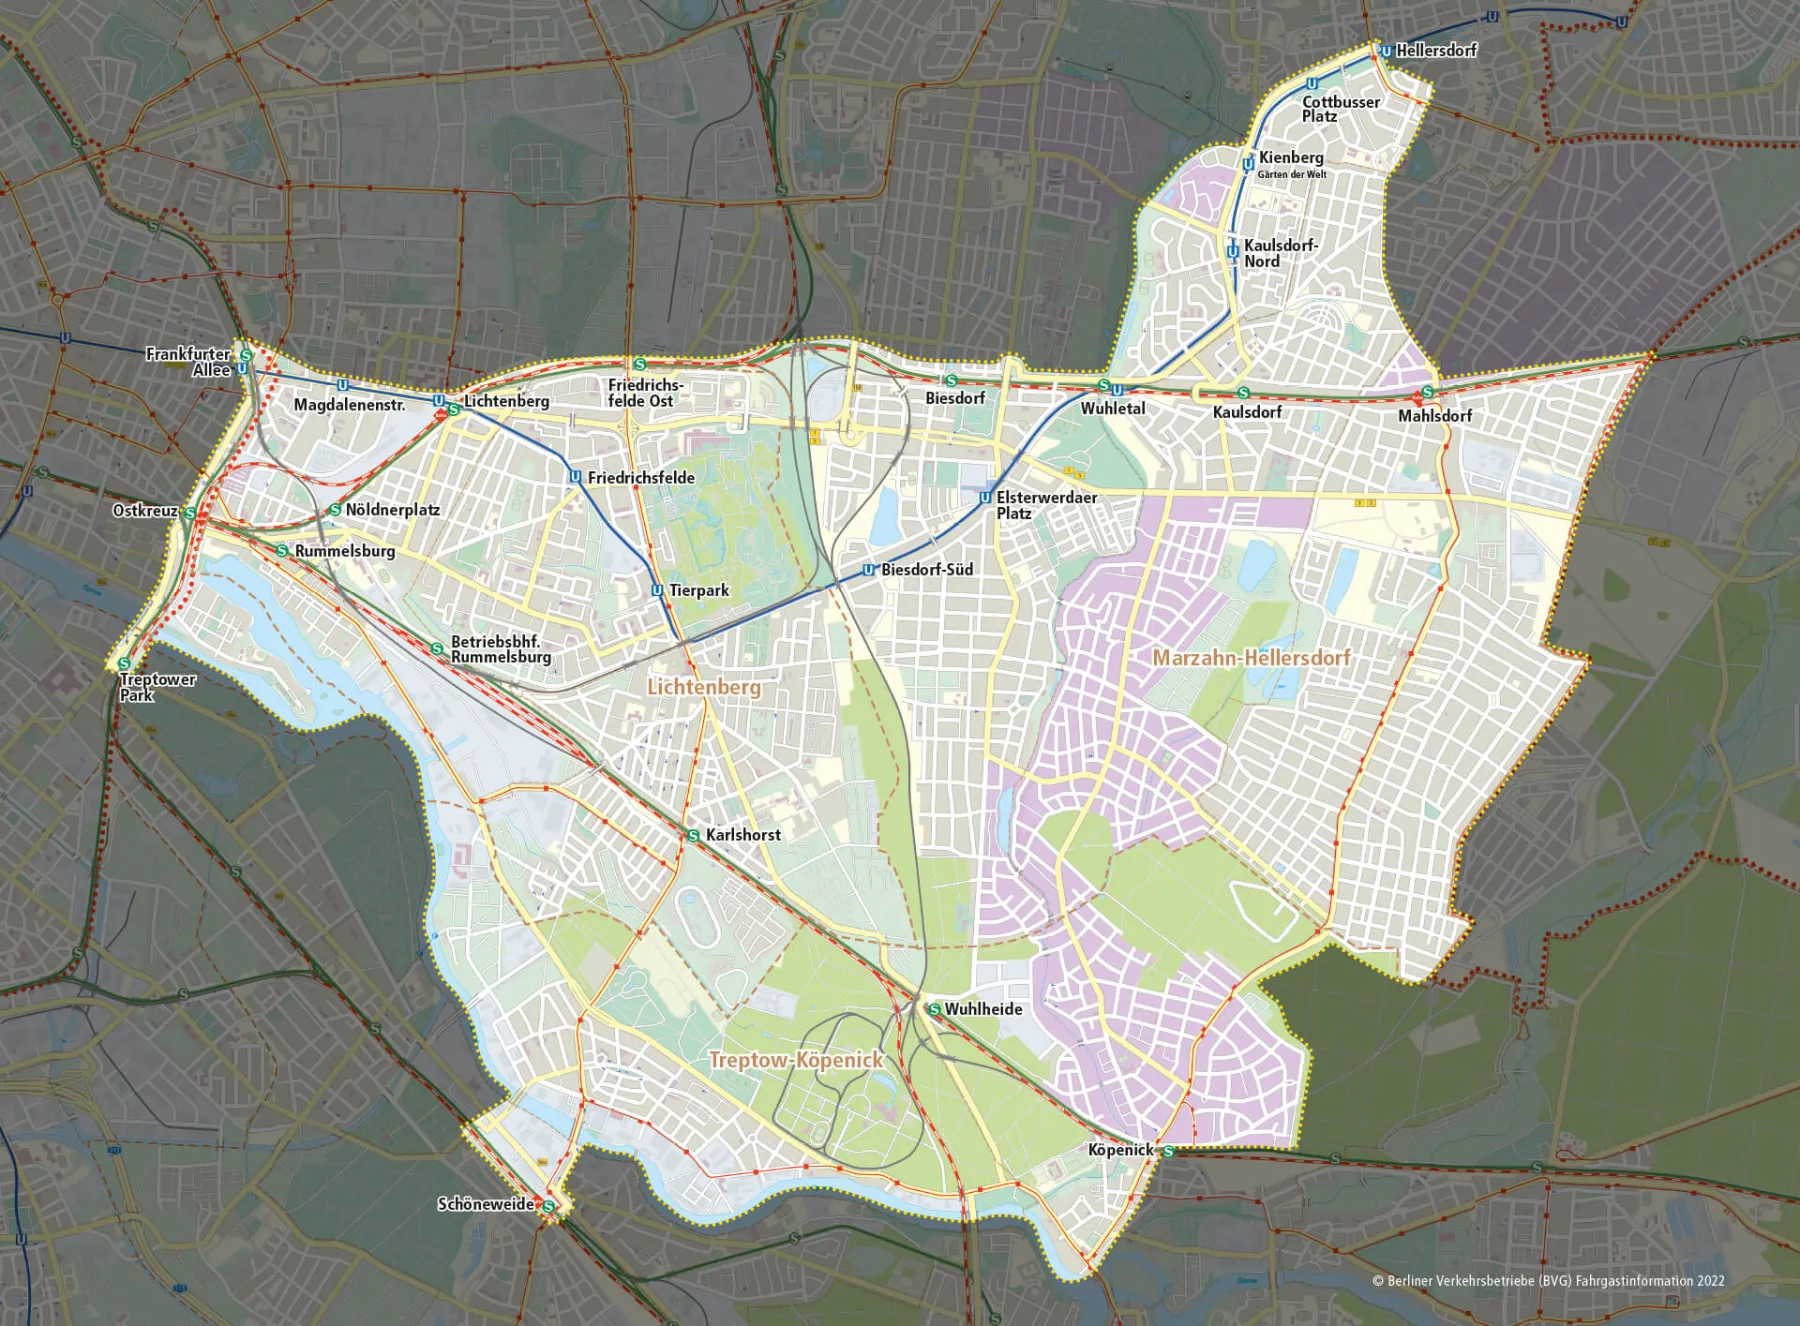 Es ist eine Karte mit Ausschnitten der Bezirke Friedrichshain-Kreuzberg, Lichtenberg, Marzahn-Hellersdorf und Tretptow-Köpenick zu sehen (mit S-, U- und Regionalbahnlinien). Dabei ist der Bereich, in dem der Muva nicht fährt dunkel schattiert, sodass der Bereich, in dem der Muva fährt, hell und klar zu sehen ist.  